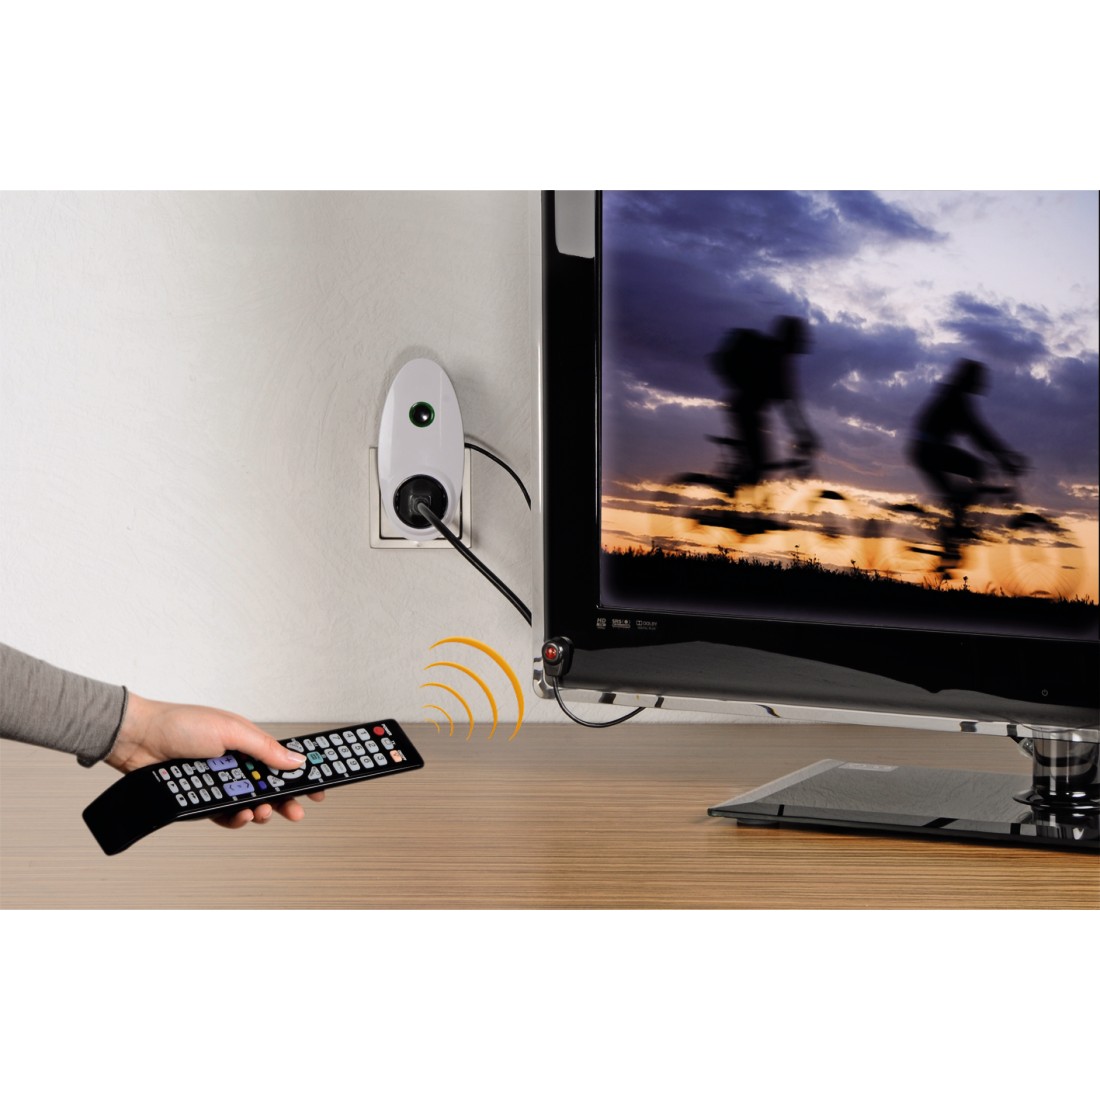 Hama TV Standby-Stop Abschalter Schalter Energiespargerät Powersafer IR Sensor 